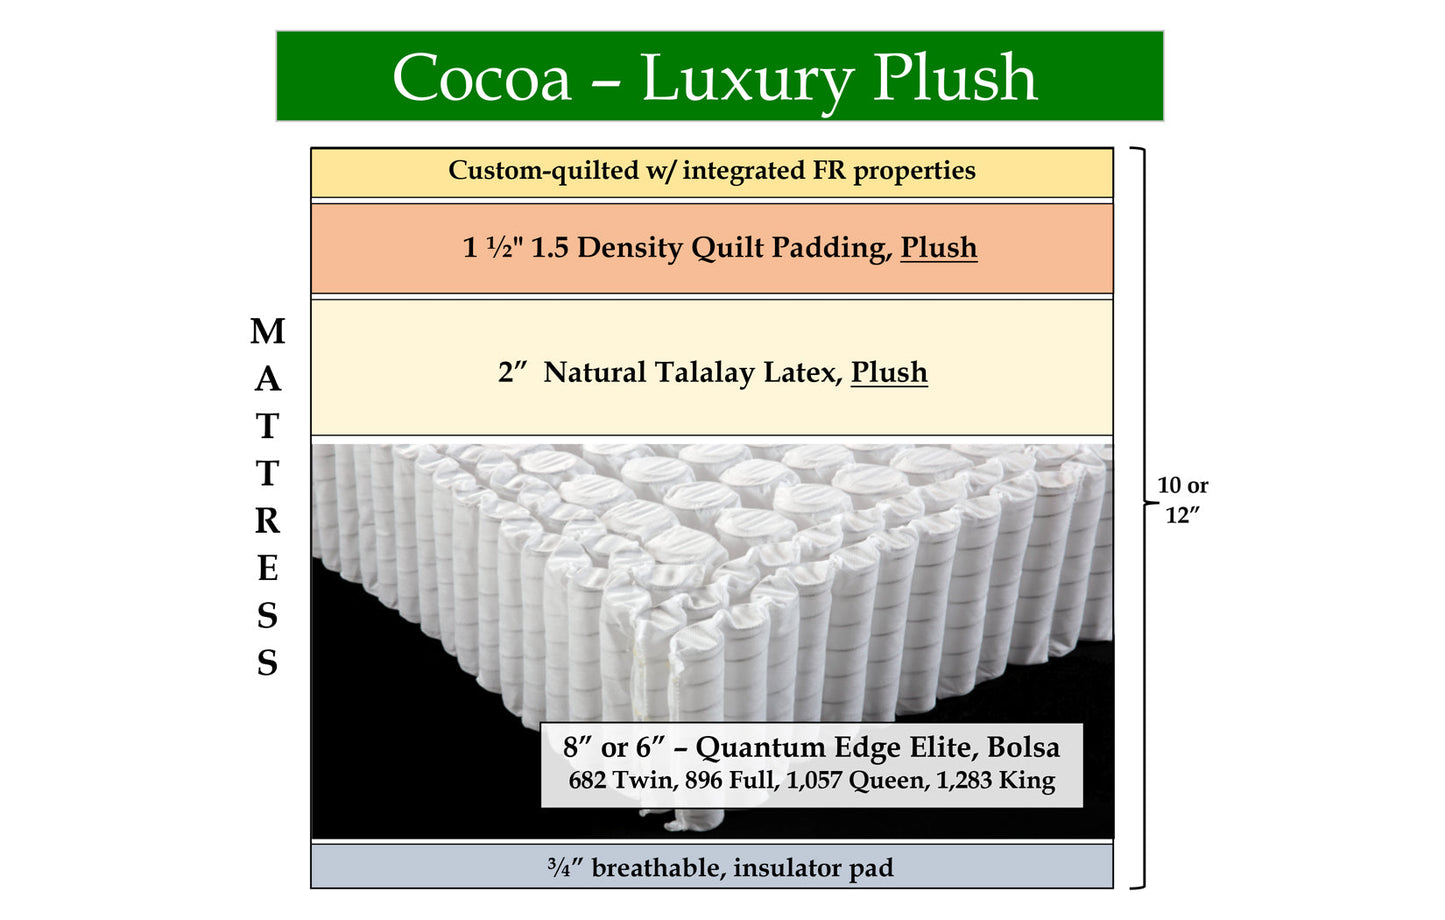 Cocoa Luxury Plush, 31" x 72.5" x 10" mattress w/ notched corner